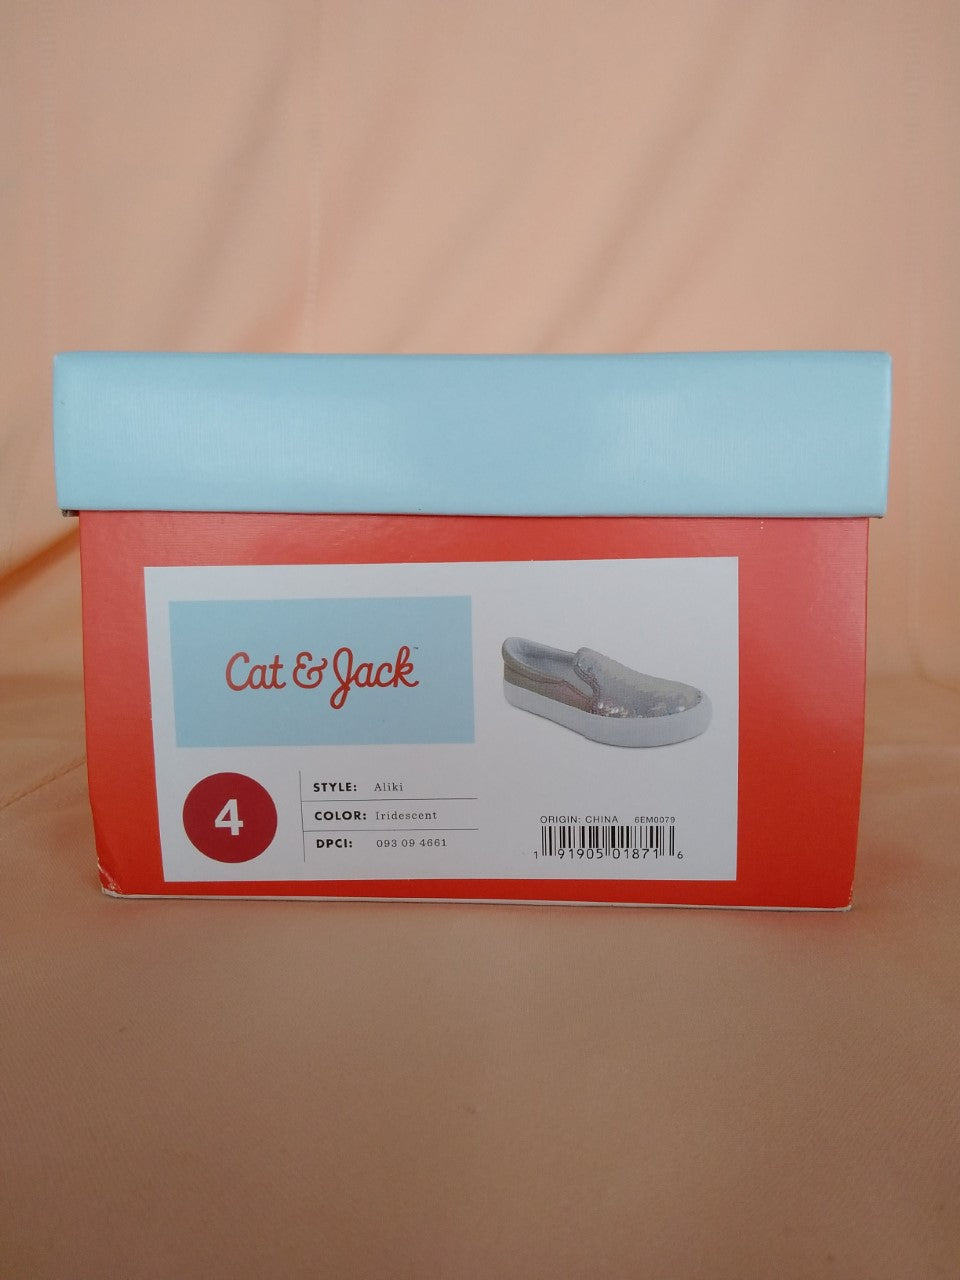 Cat & Jack Aliki Iridescent Shoes - Size 4